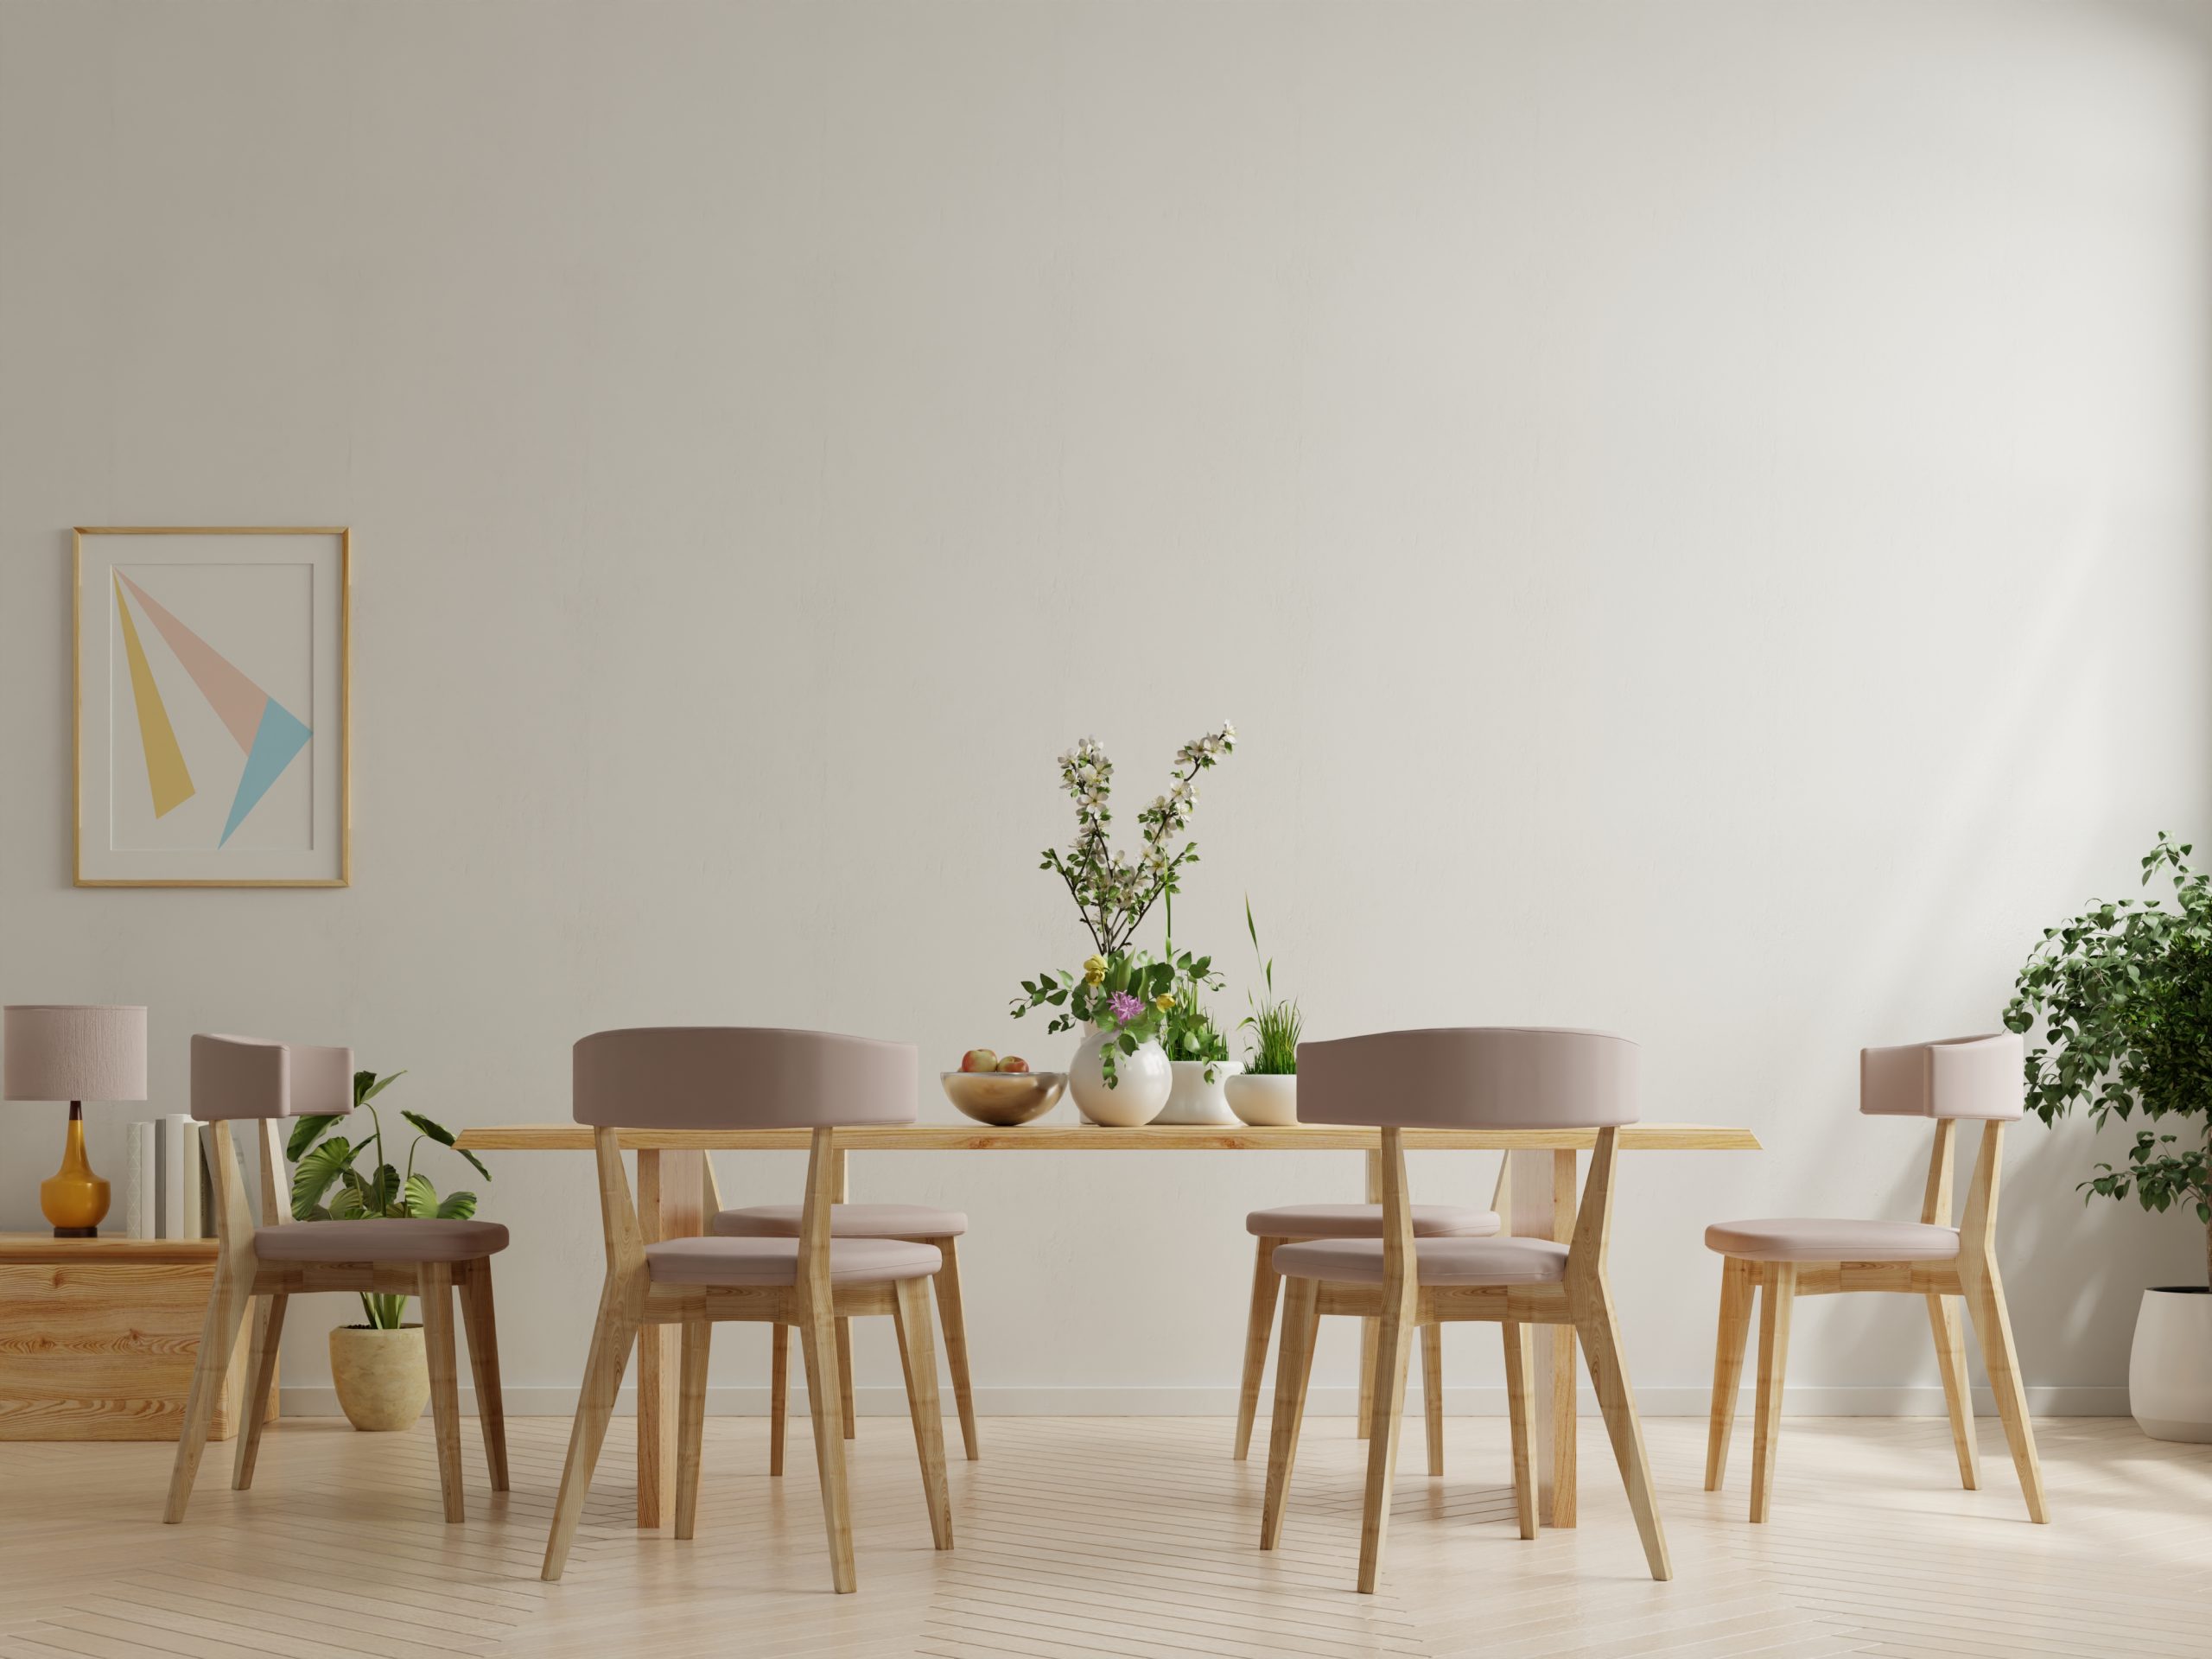 15 Desain Ruang Makan Minimalis Sederhana untuk Keluarga Kecil